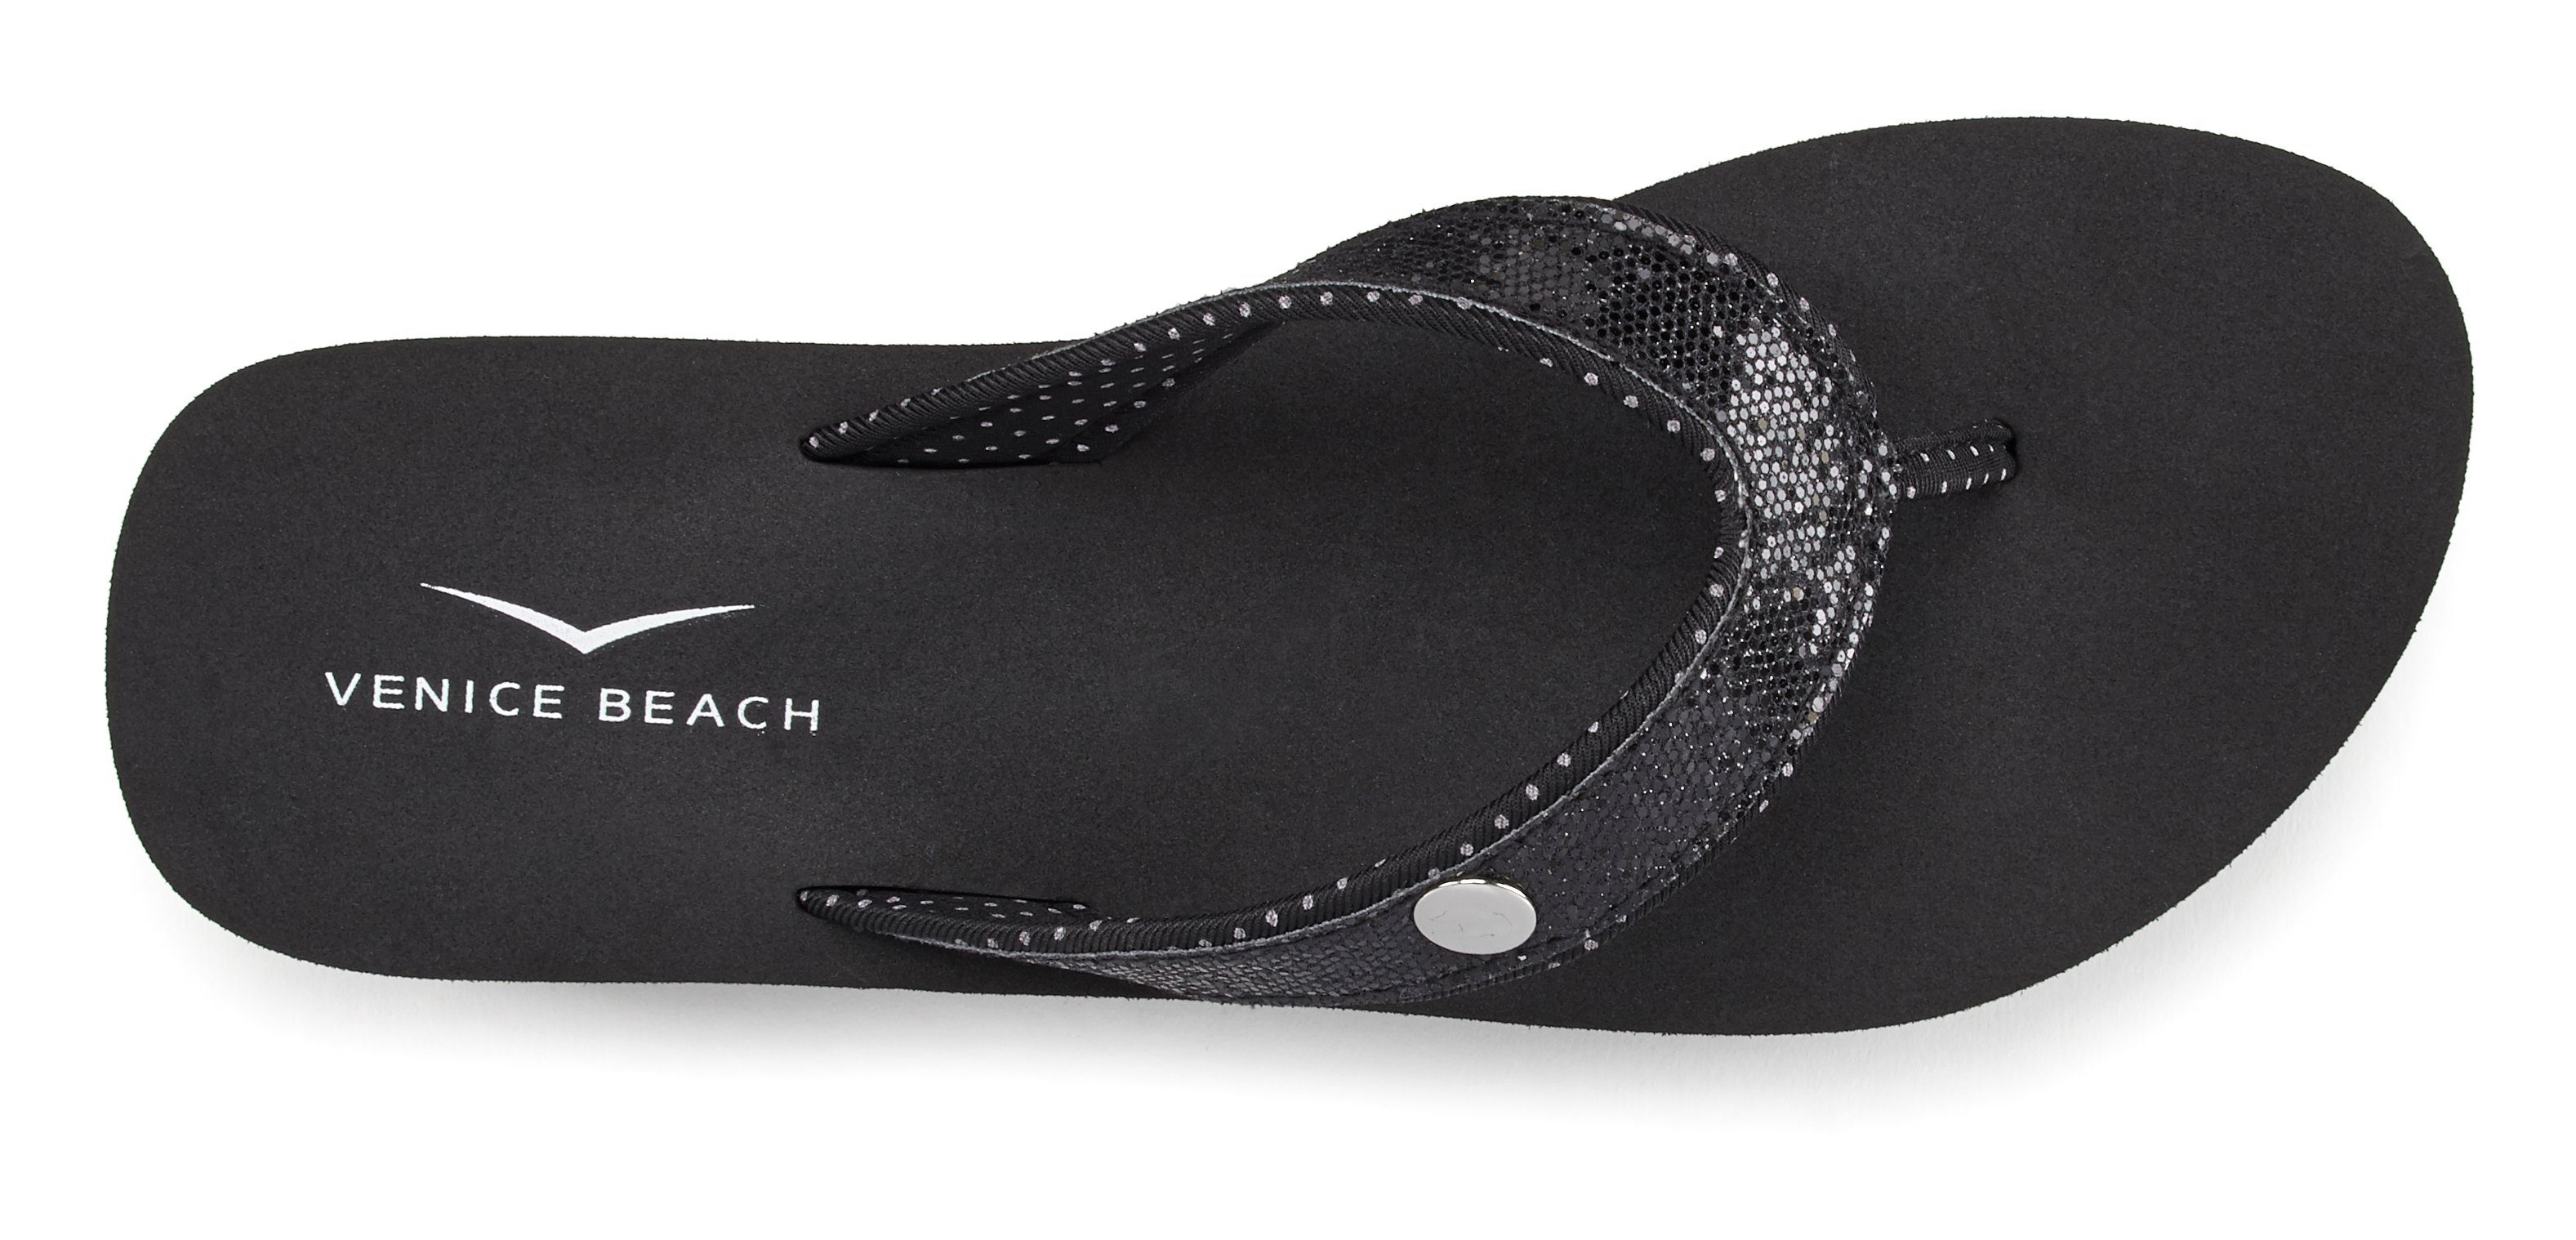 Venice Beach Badezehentrenner Sandale, Pantolette, schwarz mit Glitzerband VEGAN Badeschuh ultraleicht